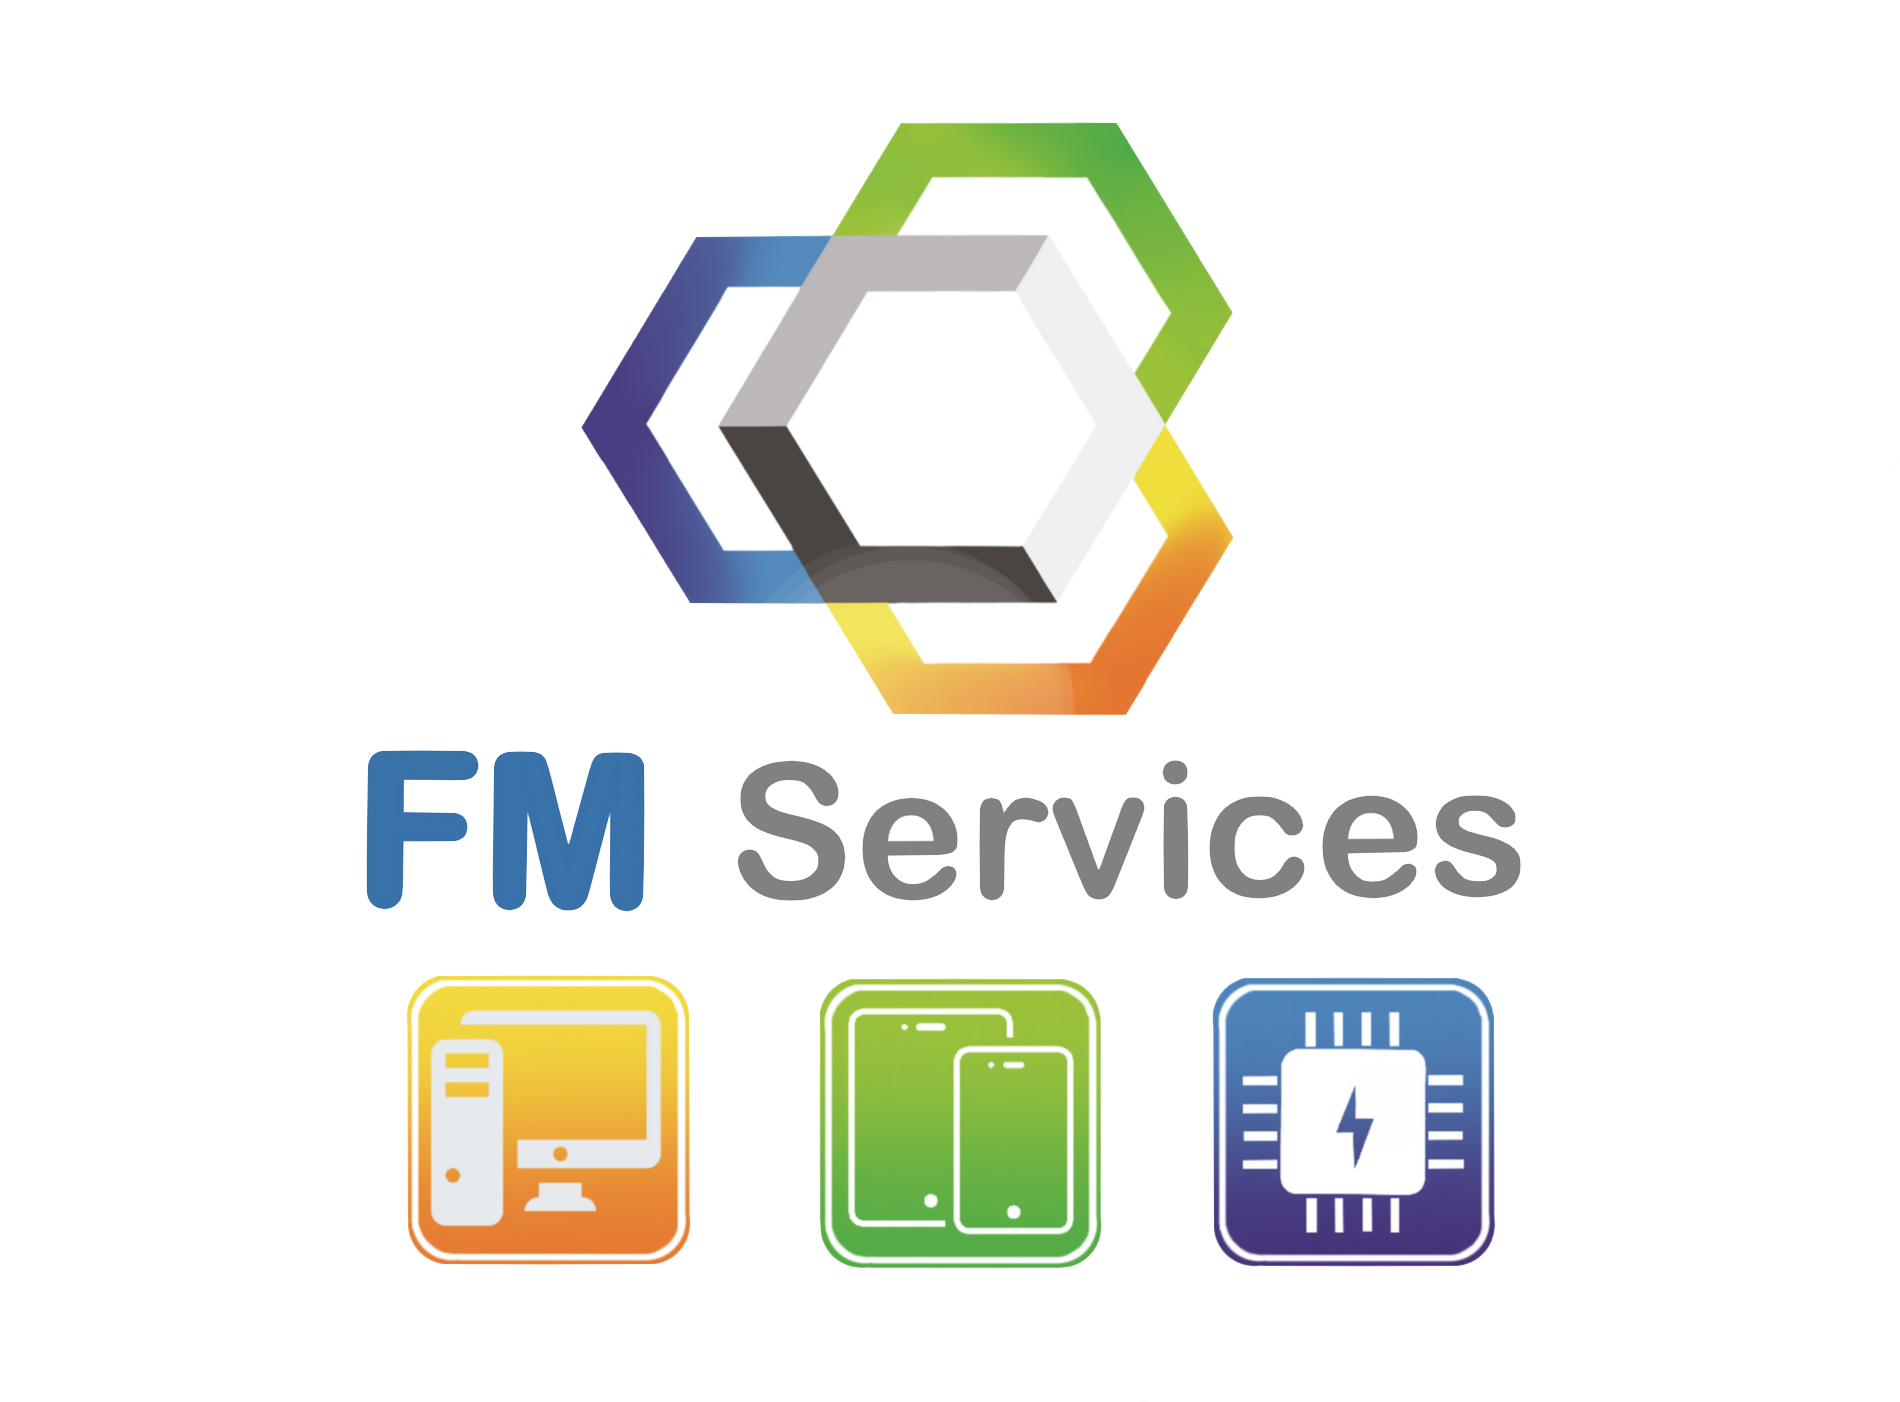 FM Services